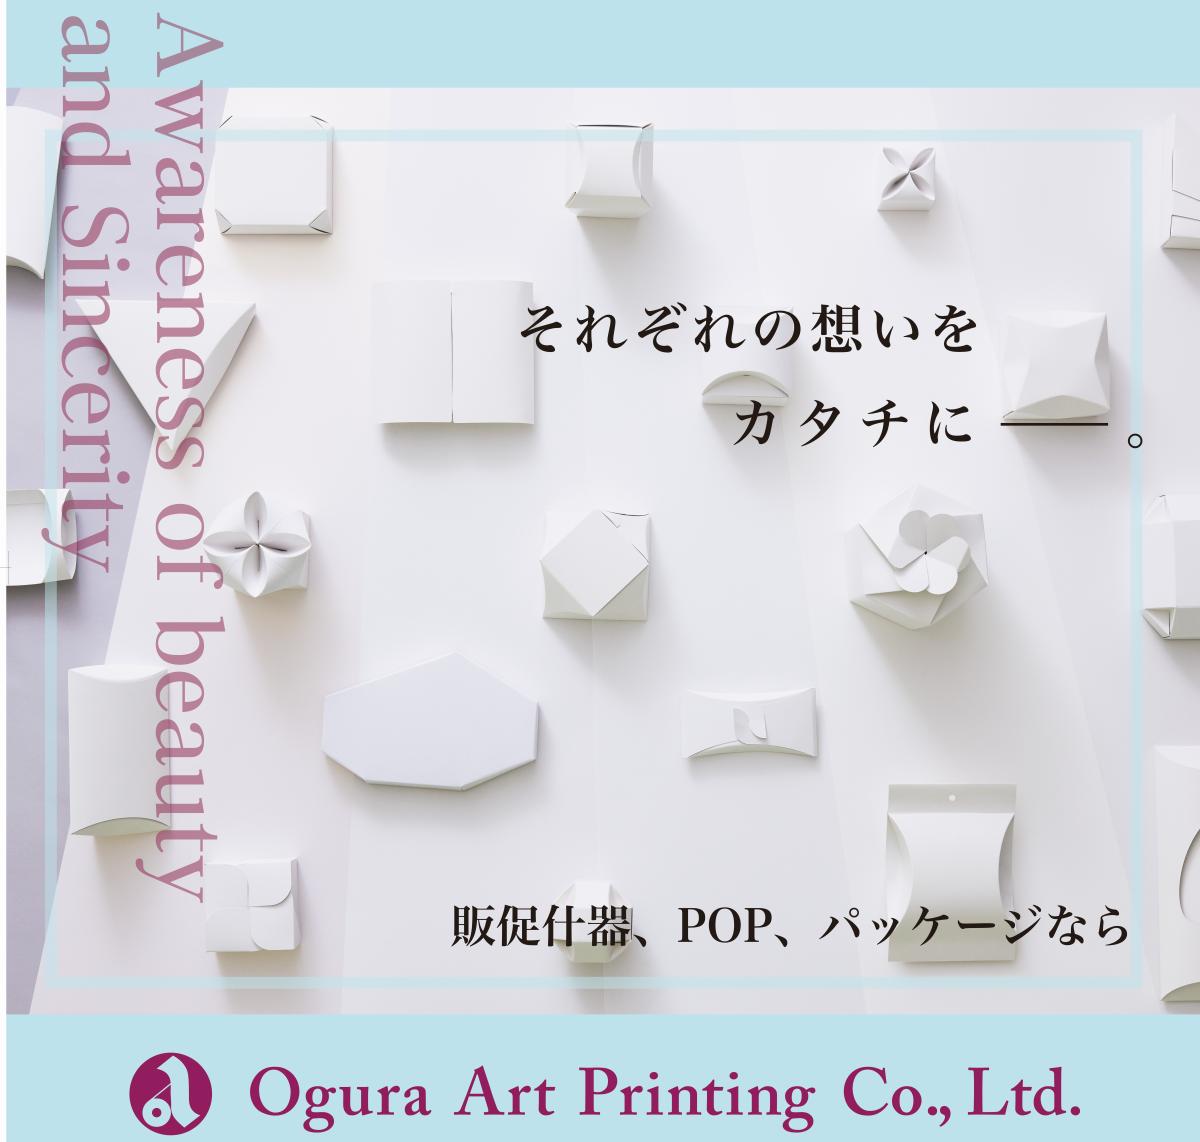 昭和生まれの印刷会社が毎日100,000個のパッケージを作った結果...